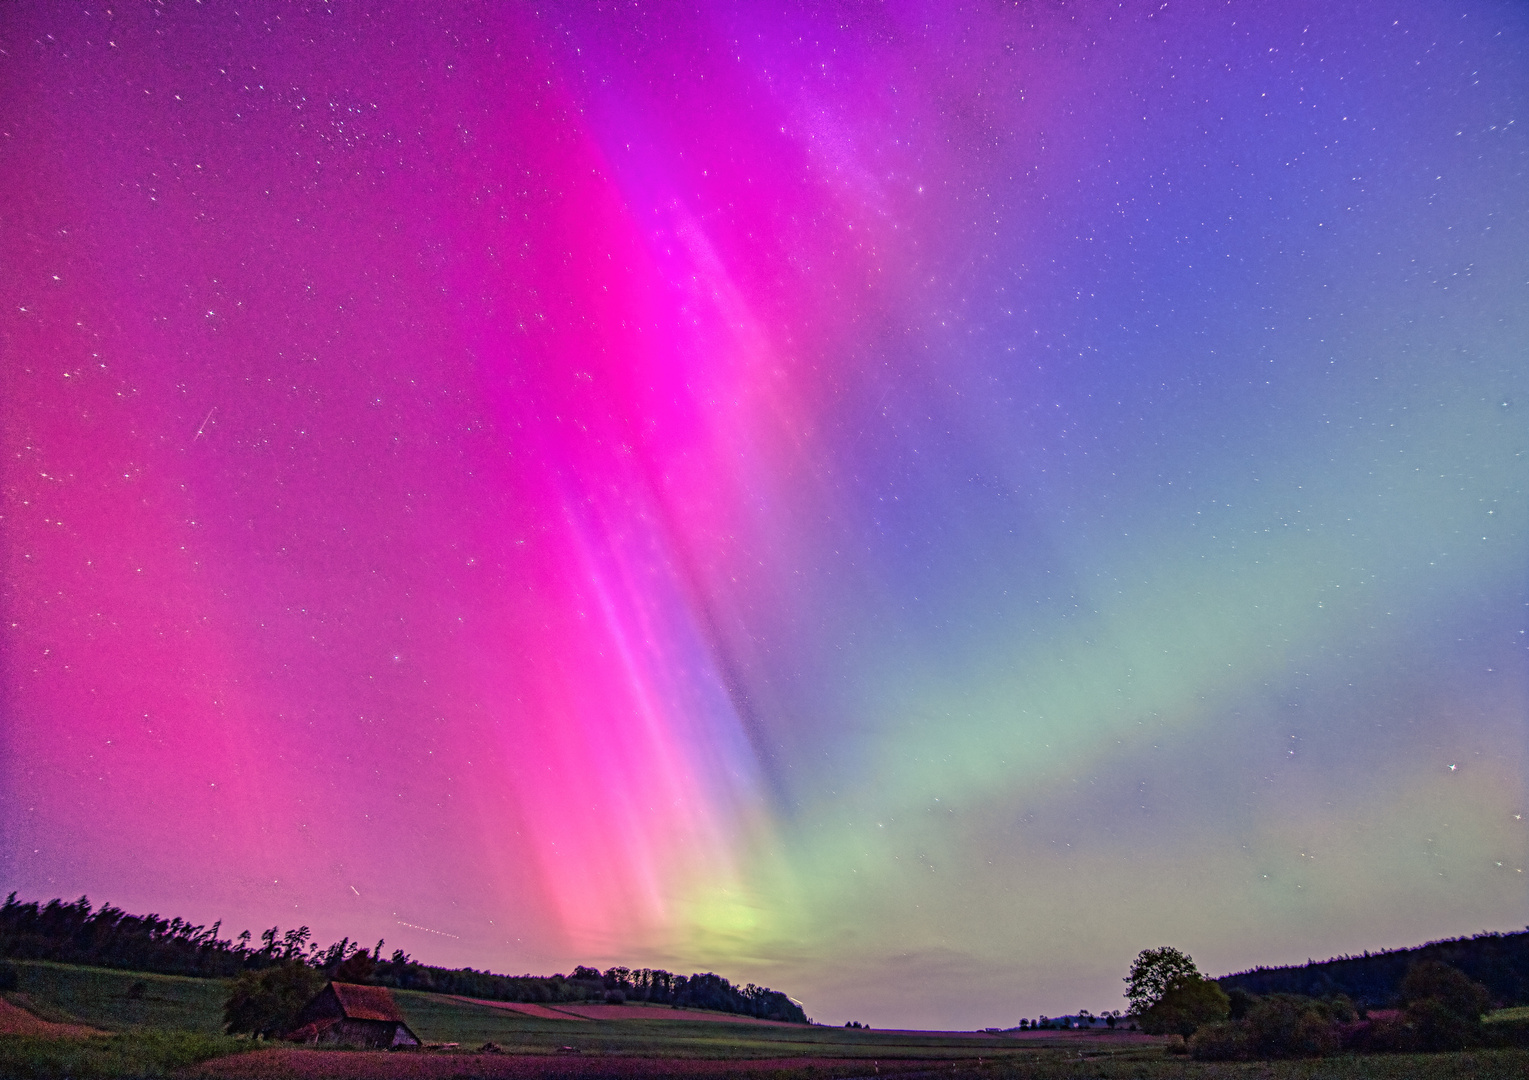 Aurora Borealis am Himmel über Nordhessen.